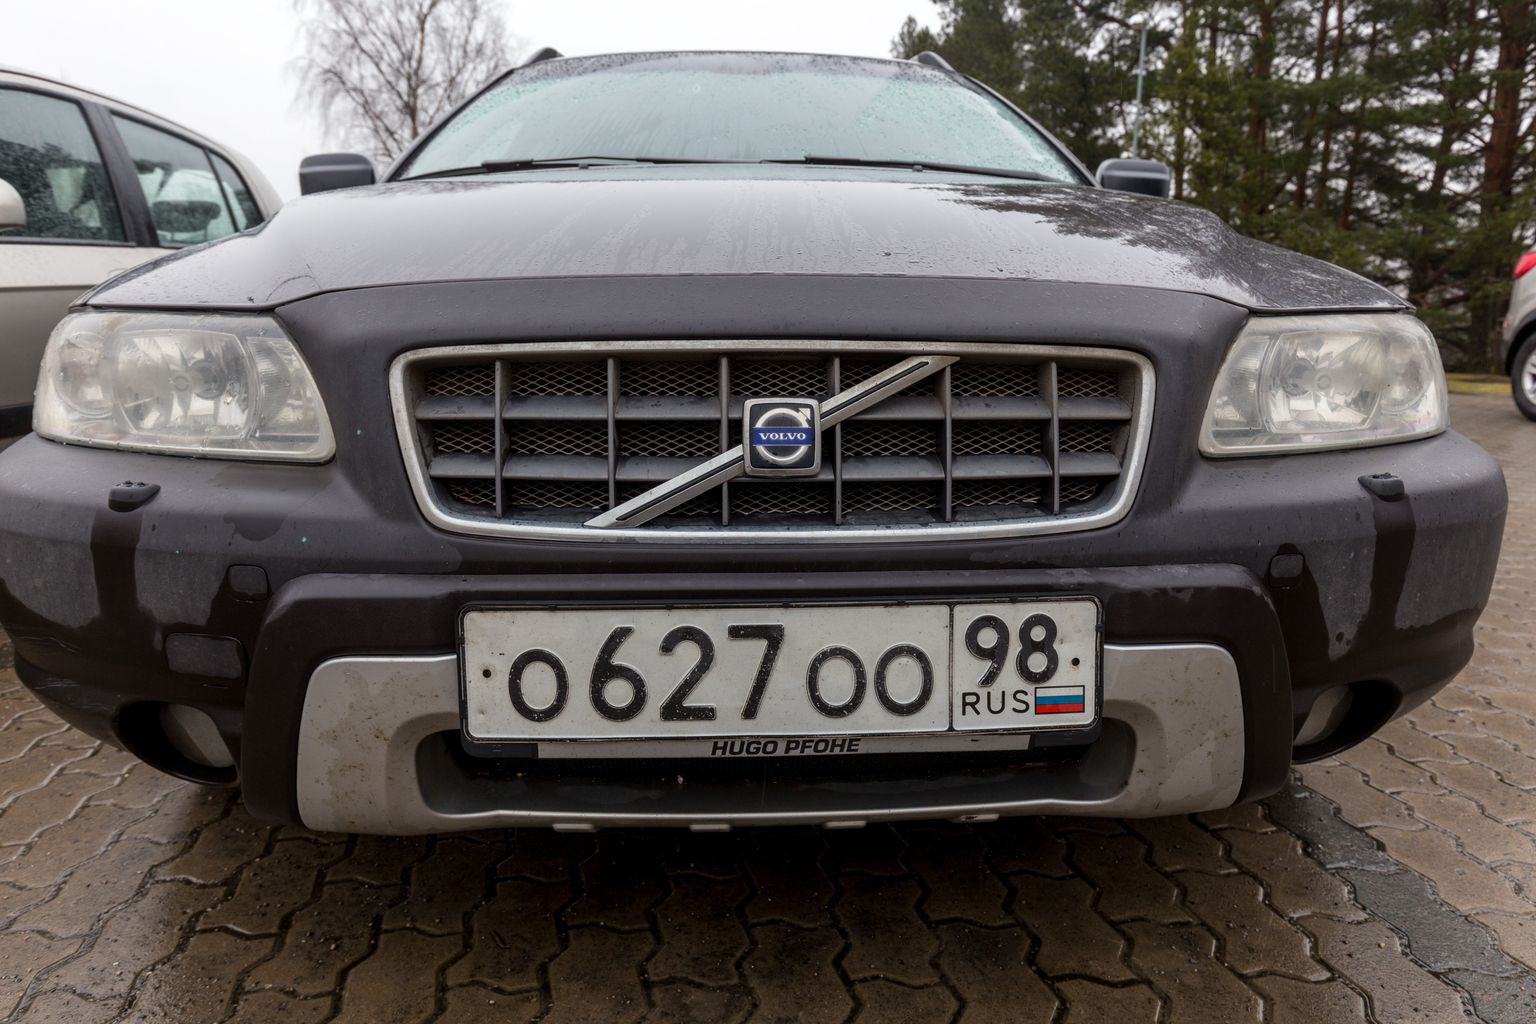 Автомобиль с российским регистрационным знаком. Снимок иллюстративный.